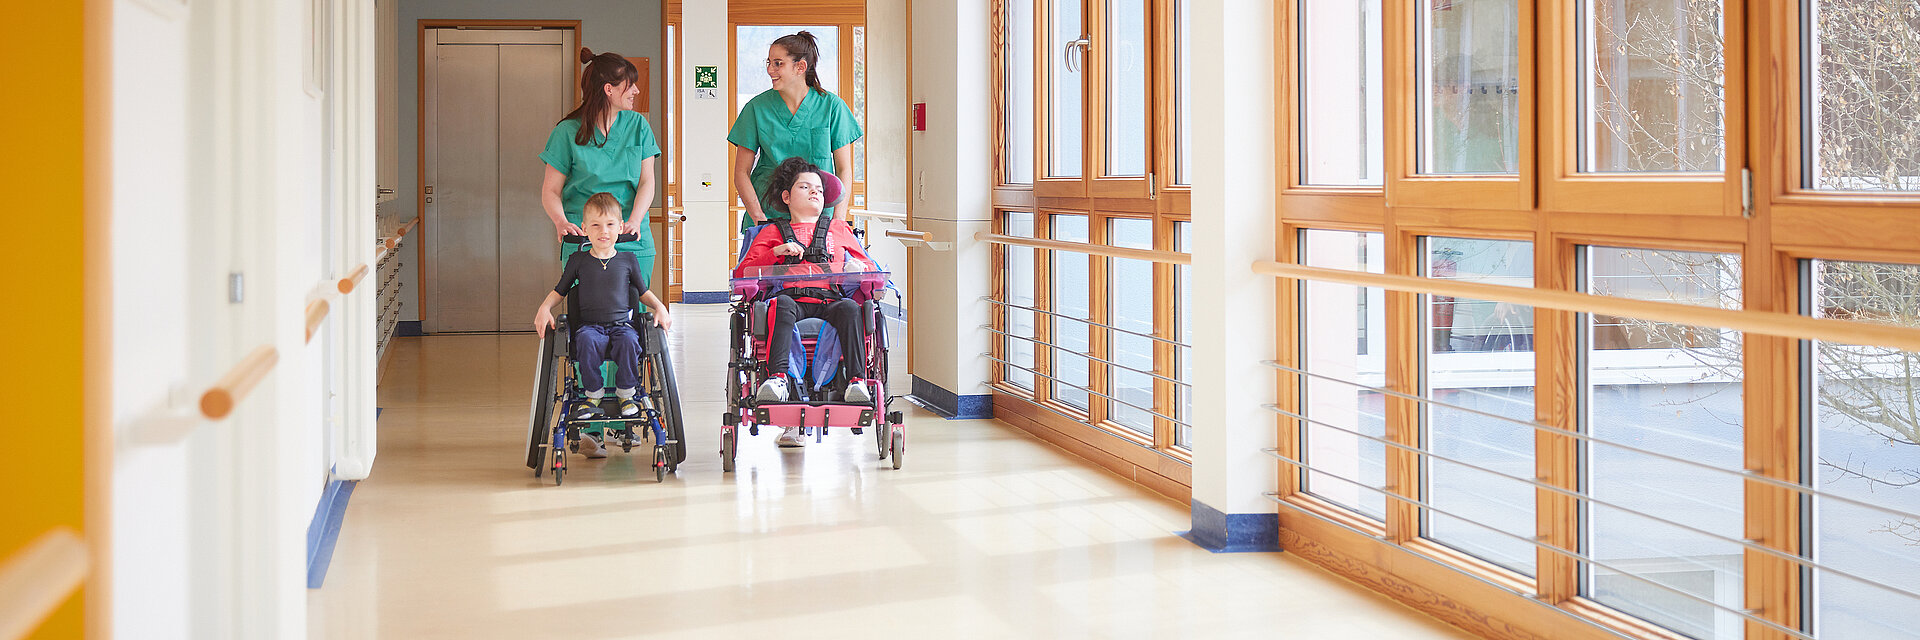 Bild: Zwei Pflegefachkräfte der Kinderklinik Schömberg schieben zwei Kinder in Rollstühlen